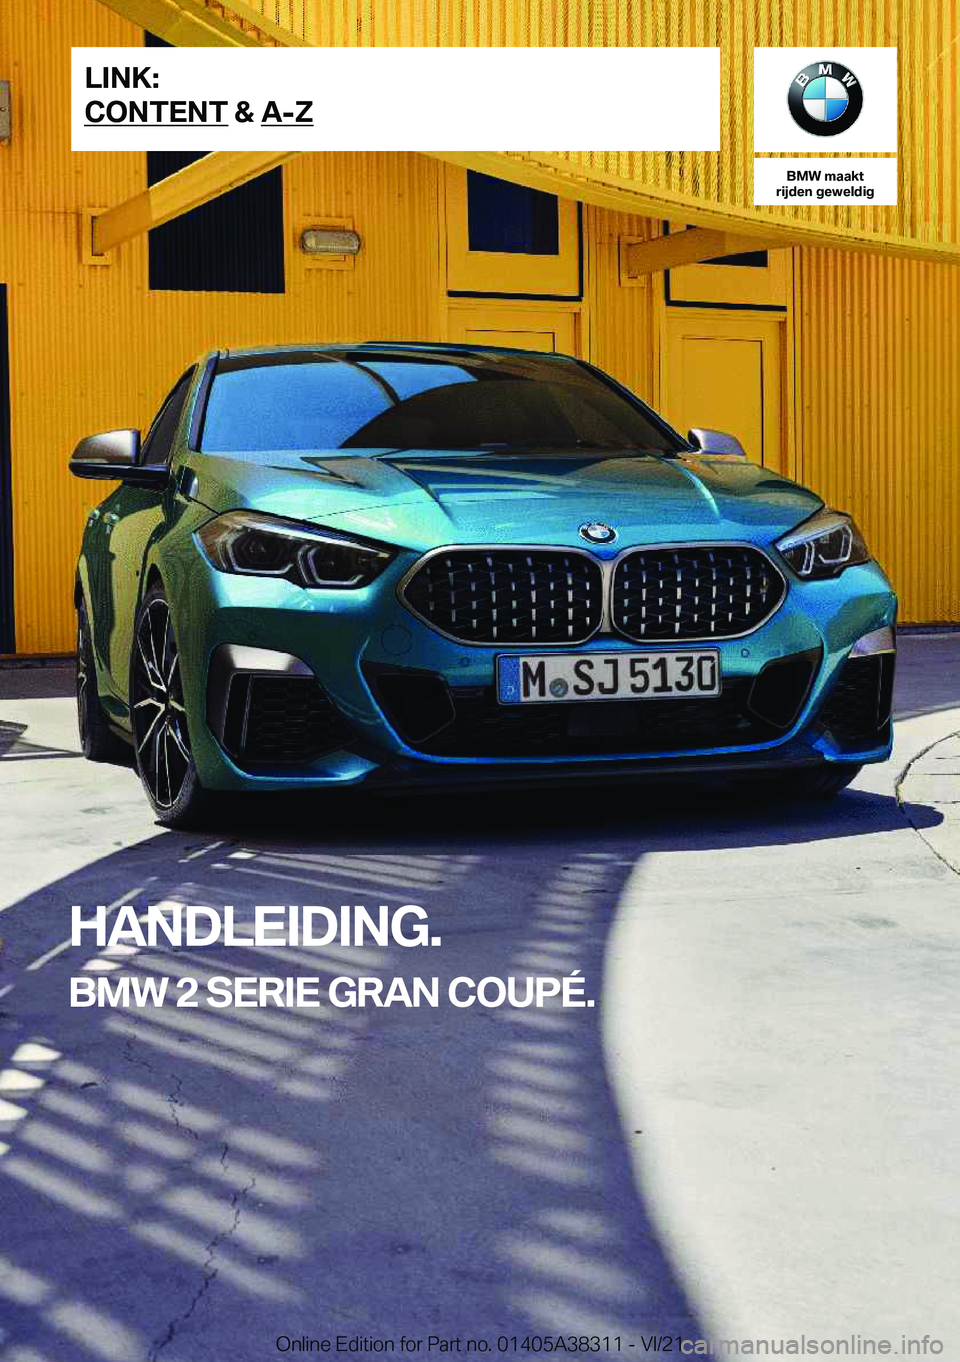 BMW 2 SERIES GRAN COUPE 2022  Instructieboekjes (in Dutch) �B�M�W��m�a�a�k�t
�r�i�j�d�e�n��g�e�w�e�l�d�i�g
�H�A�N�D�L�E�I�D�I�N�G�.
�B�M�W��2��S�E�R�I�E��G�R�A�N��C�O�U�P�